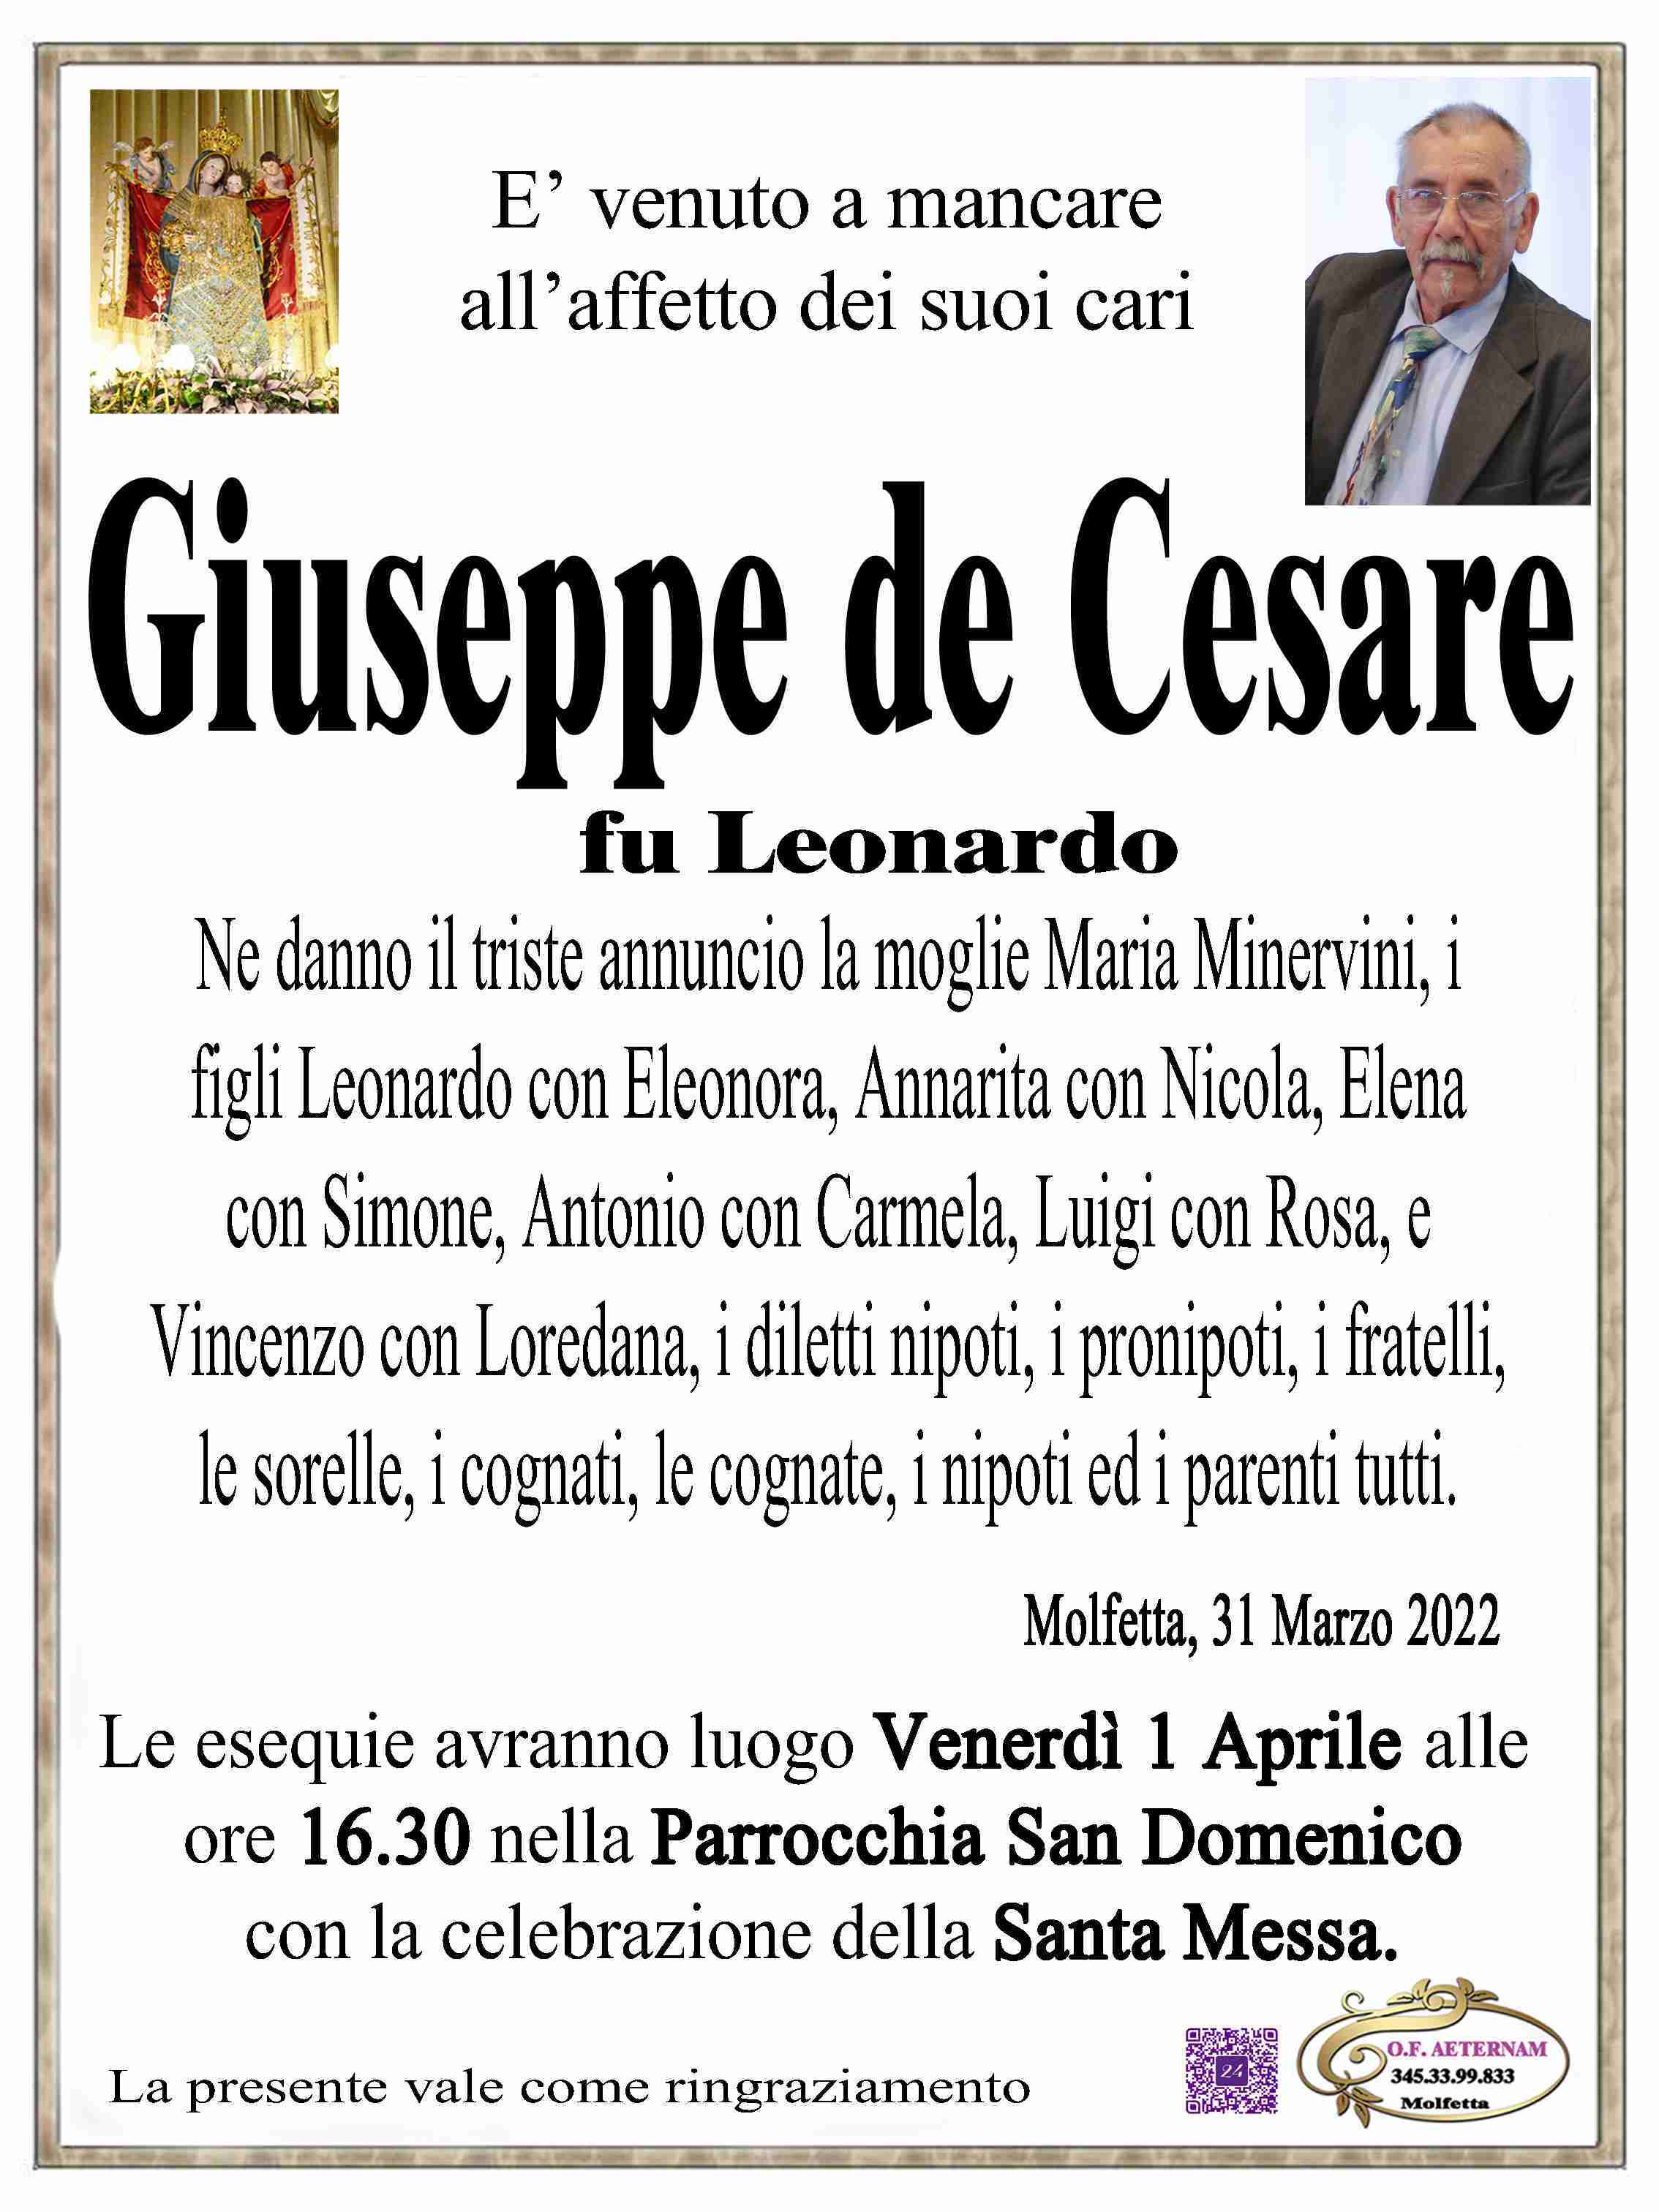 Giuseppe de Cesare